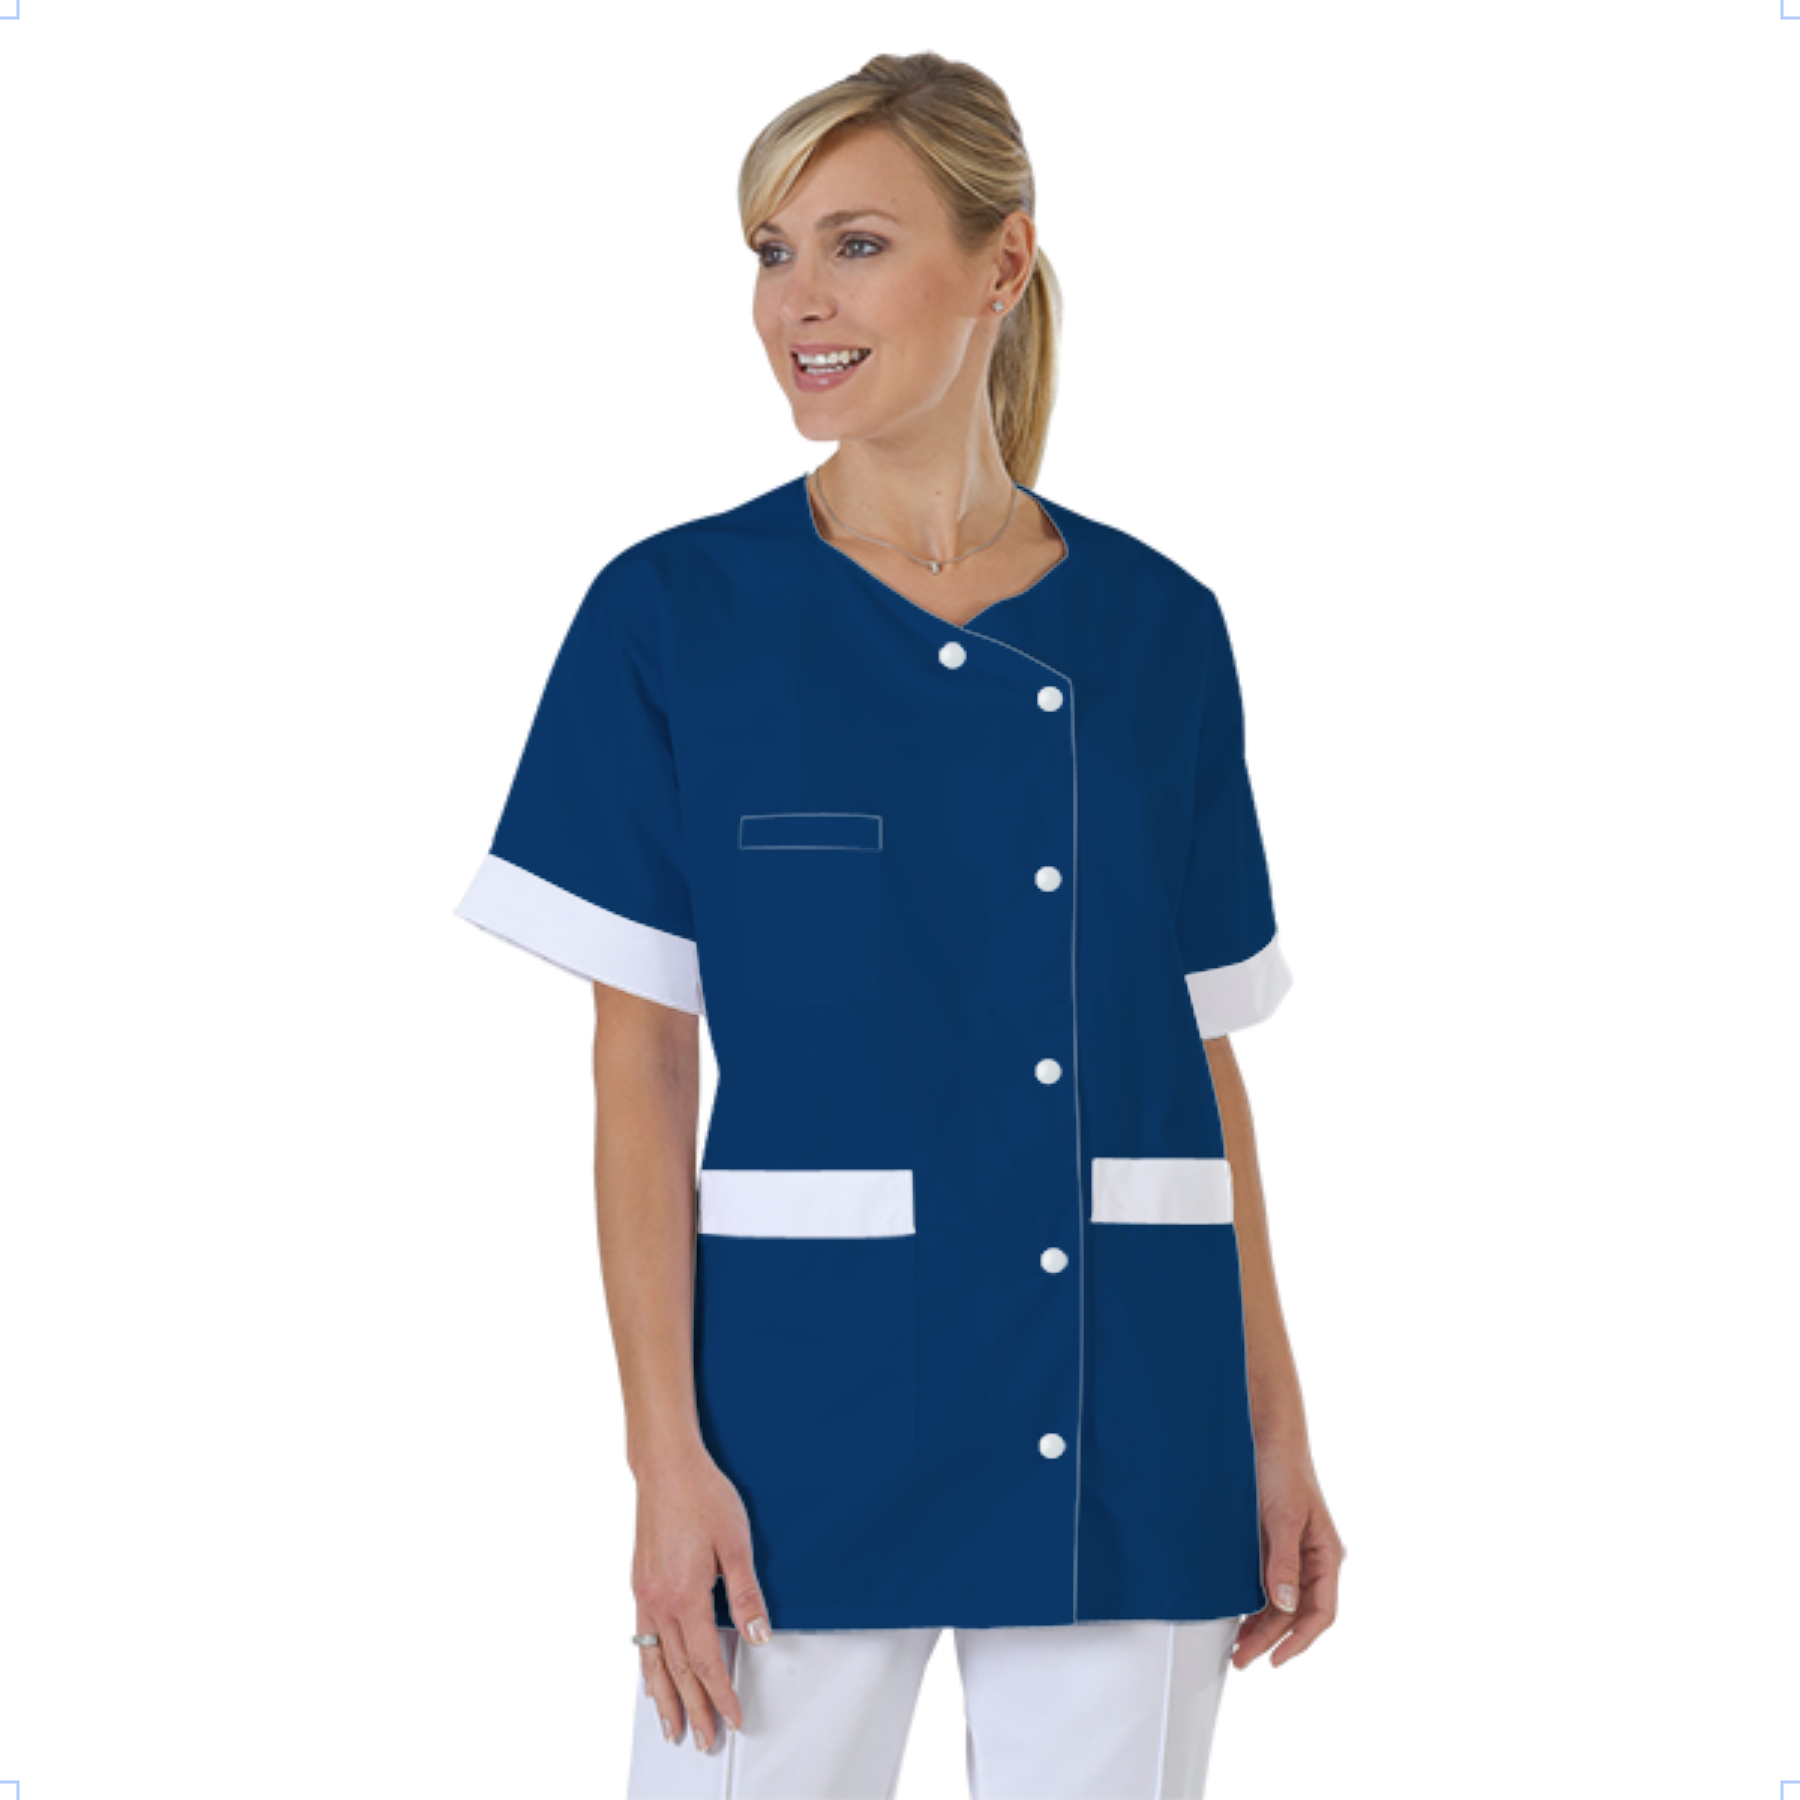 blouse-infirmiere-personnalise-col-trapeze acheté - par alice - le 23-04-2021